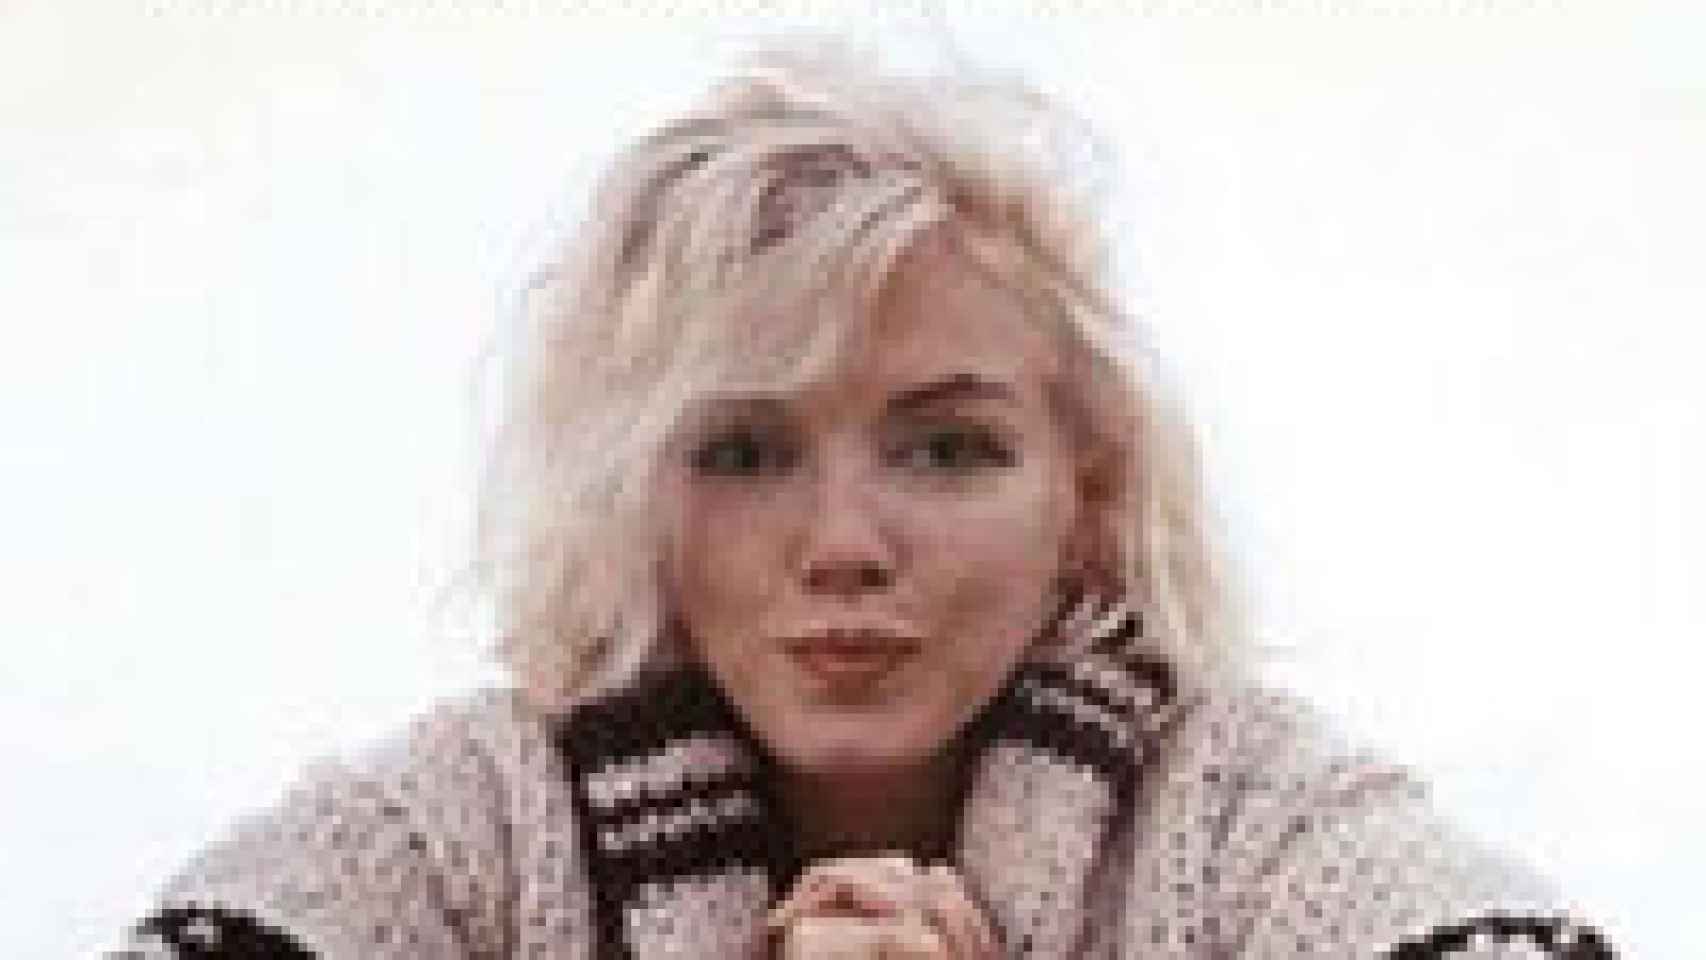 Image: Marilyn Monroe. Cuando crezcas serás rica, hermosa y famosa